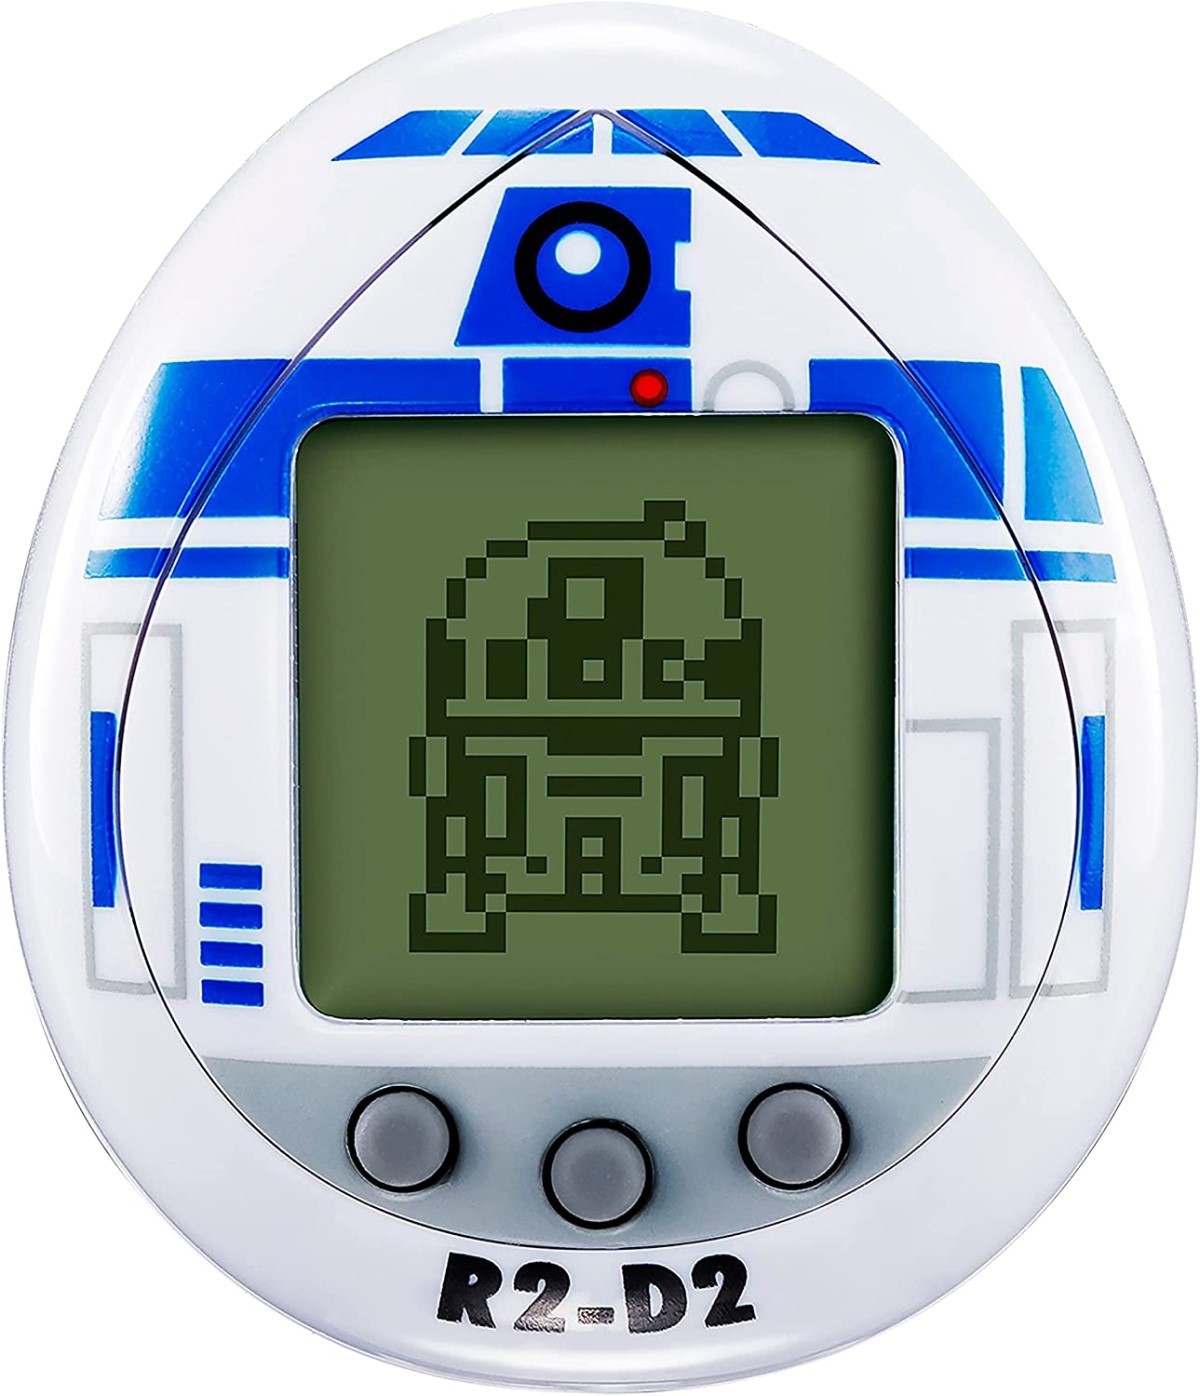 Tamagotchi do robô R2-D2 do Star Wars foi lançado  (Foto: Amazon / Divulgação )